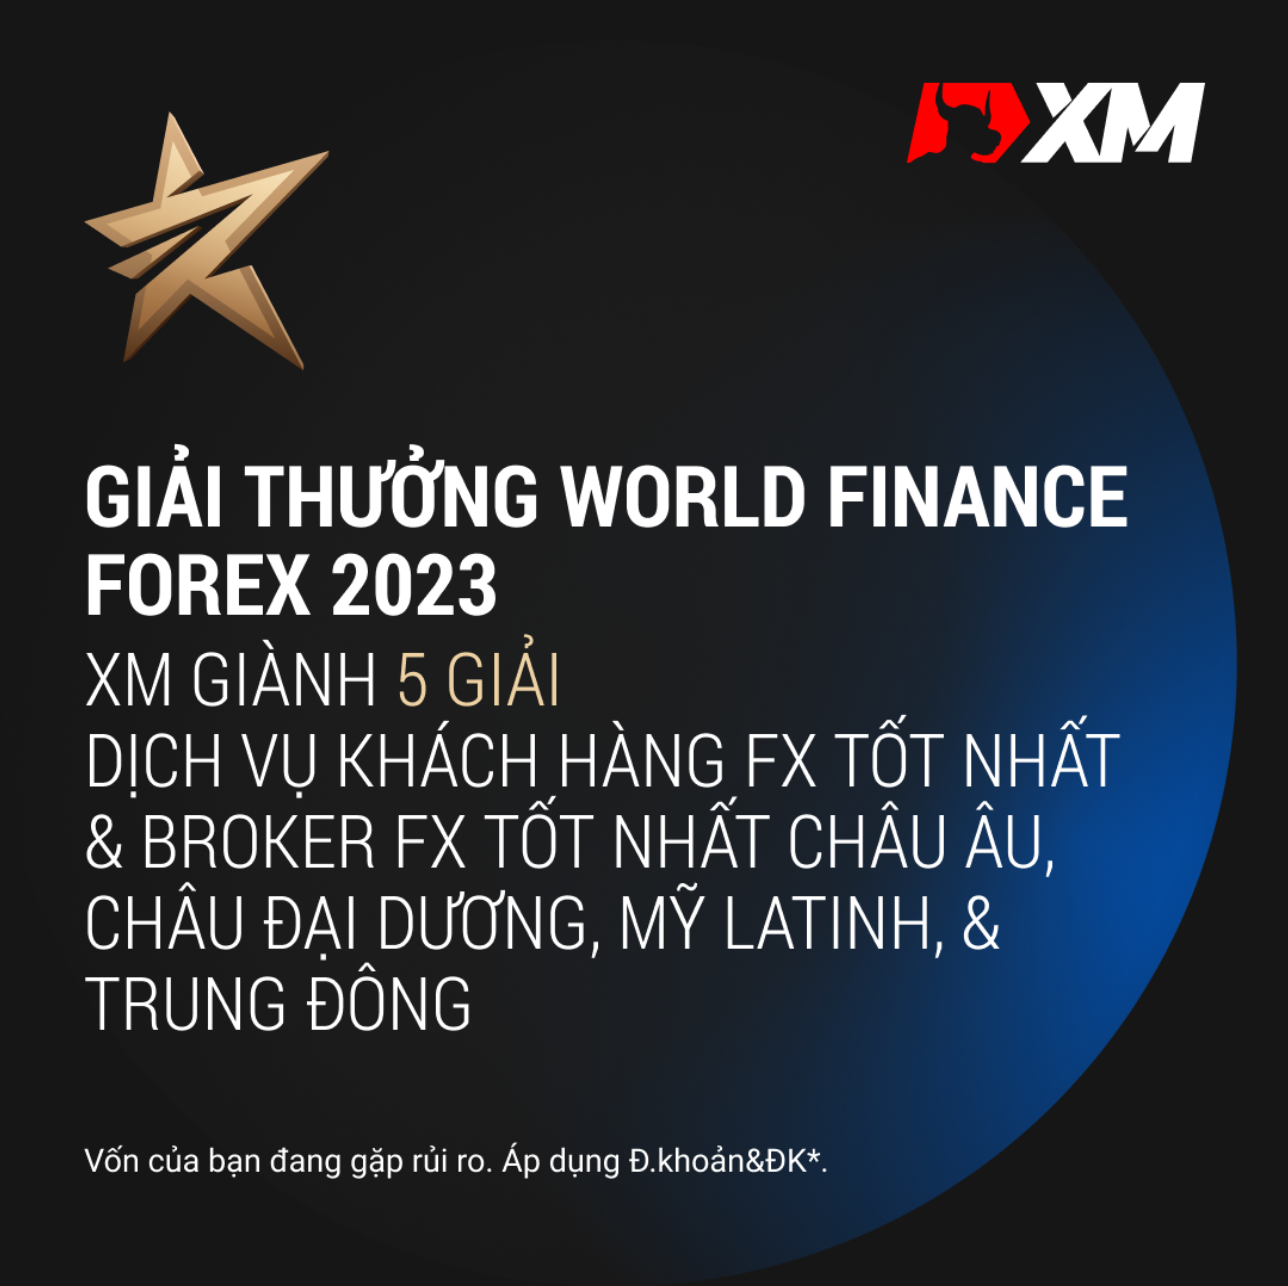 XM xuất sắc giành năm giải thường "World Finance Forex 2023"